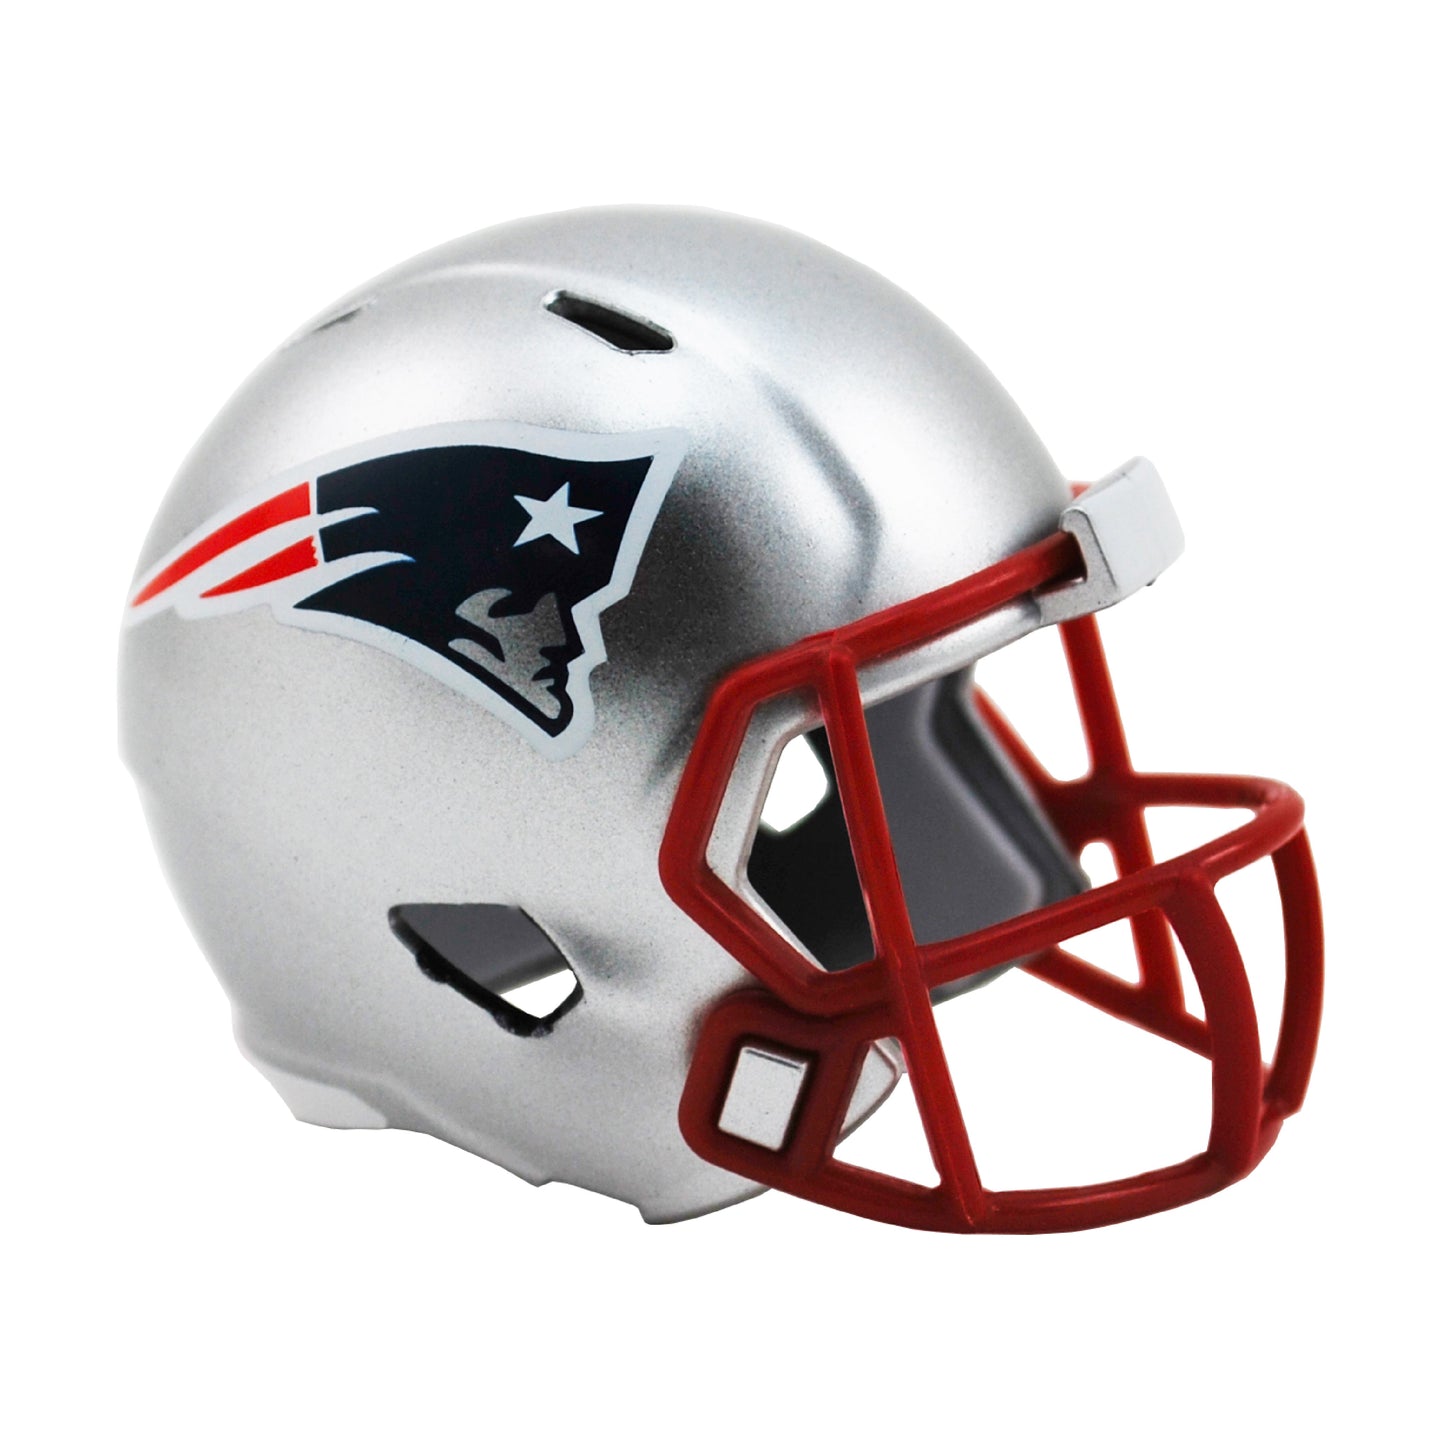 New England Patriots Riddell Speed Pocket Pro Football Helmet